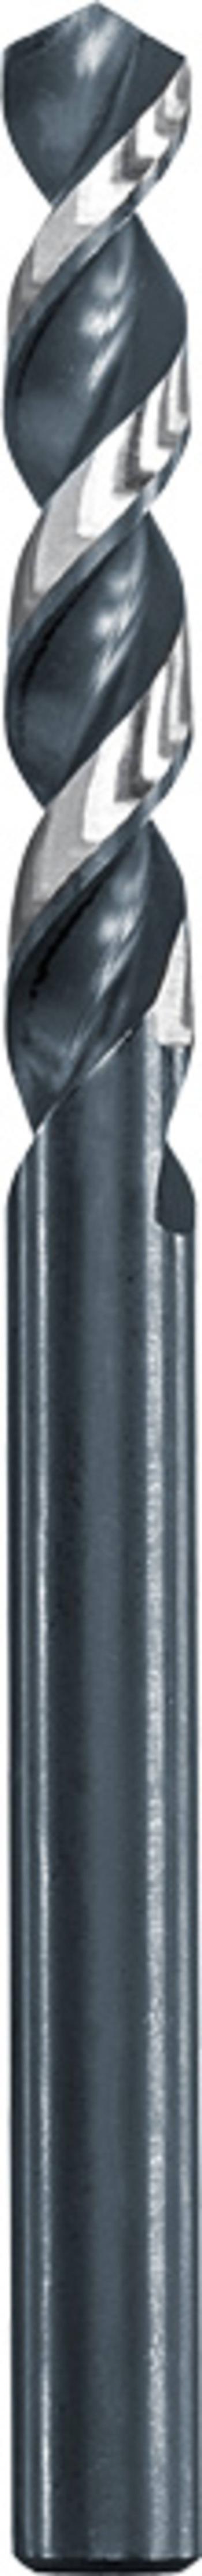 kwb 258610  kovový špirálový vrták  1 mm Celková dĺžka 34 mm    1 ks